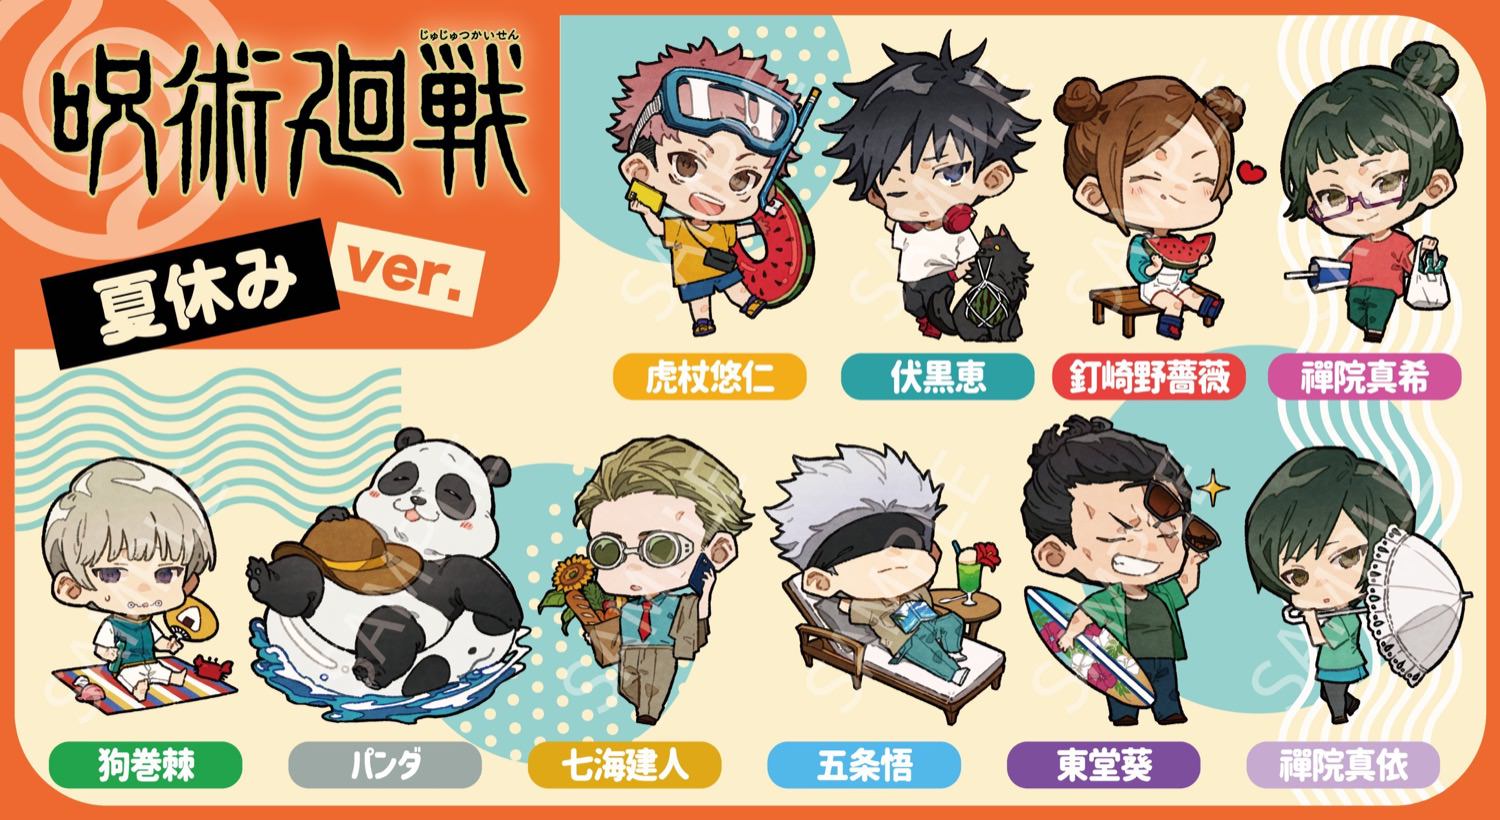 呪術廻戦 描き起こし「夏休み ver.」全10キャラクターが新登場!